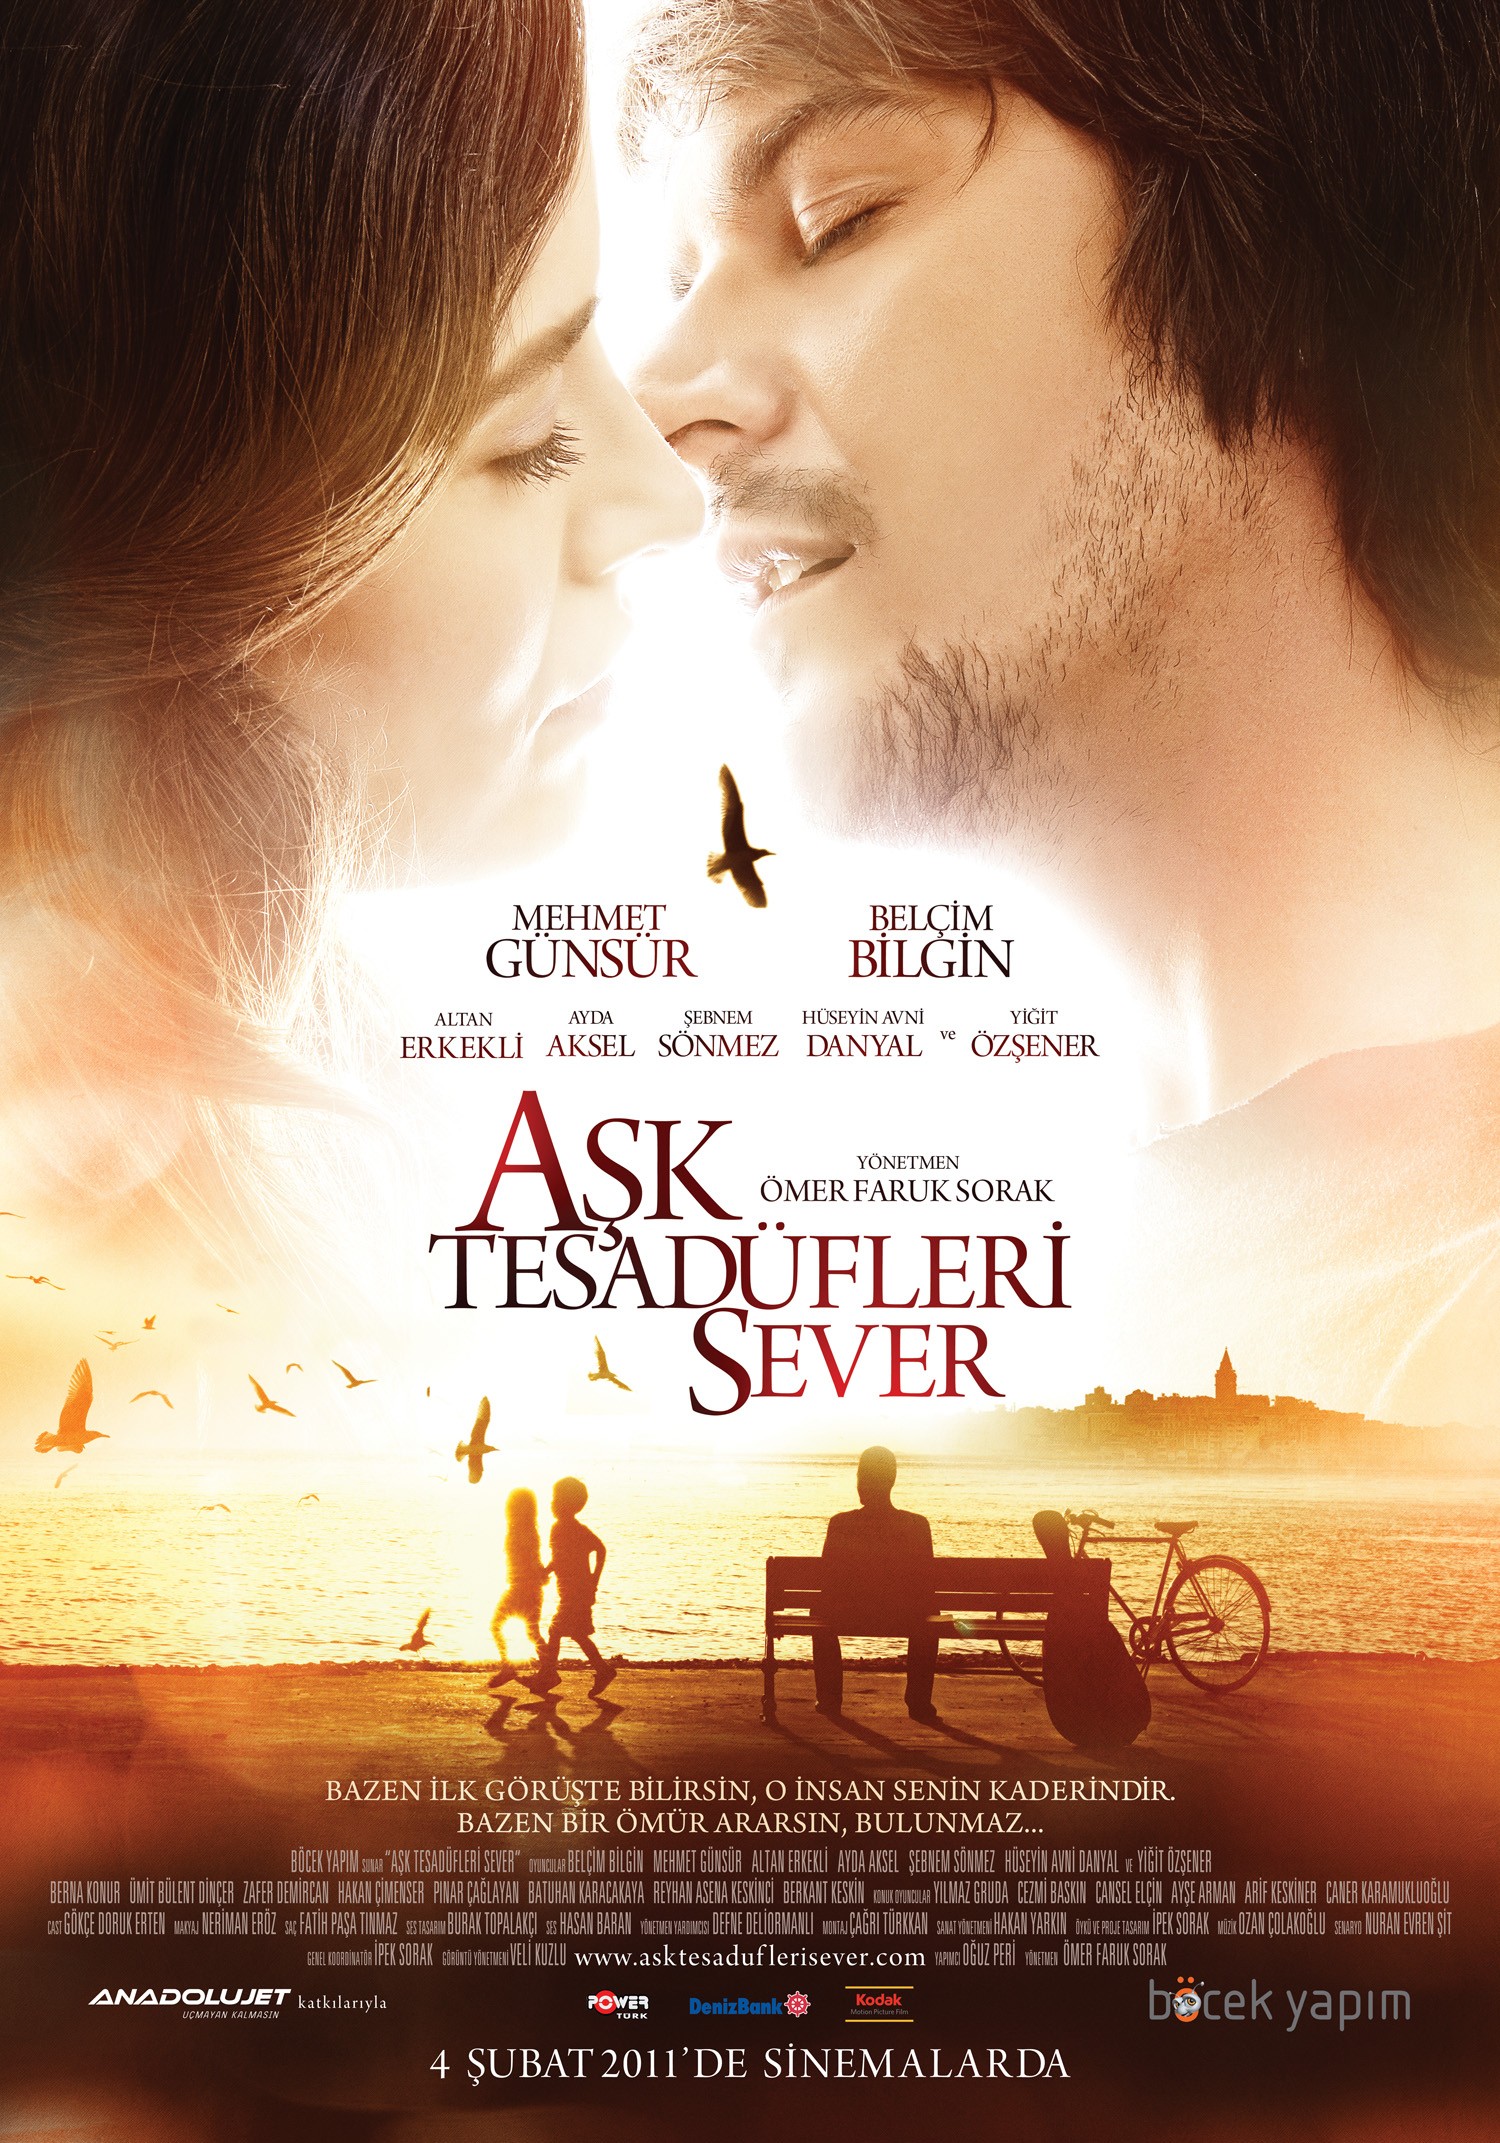 Mega Sized Movie Poster Image for Ask Tesadüfleri Sever (#2 of 4)